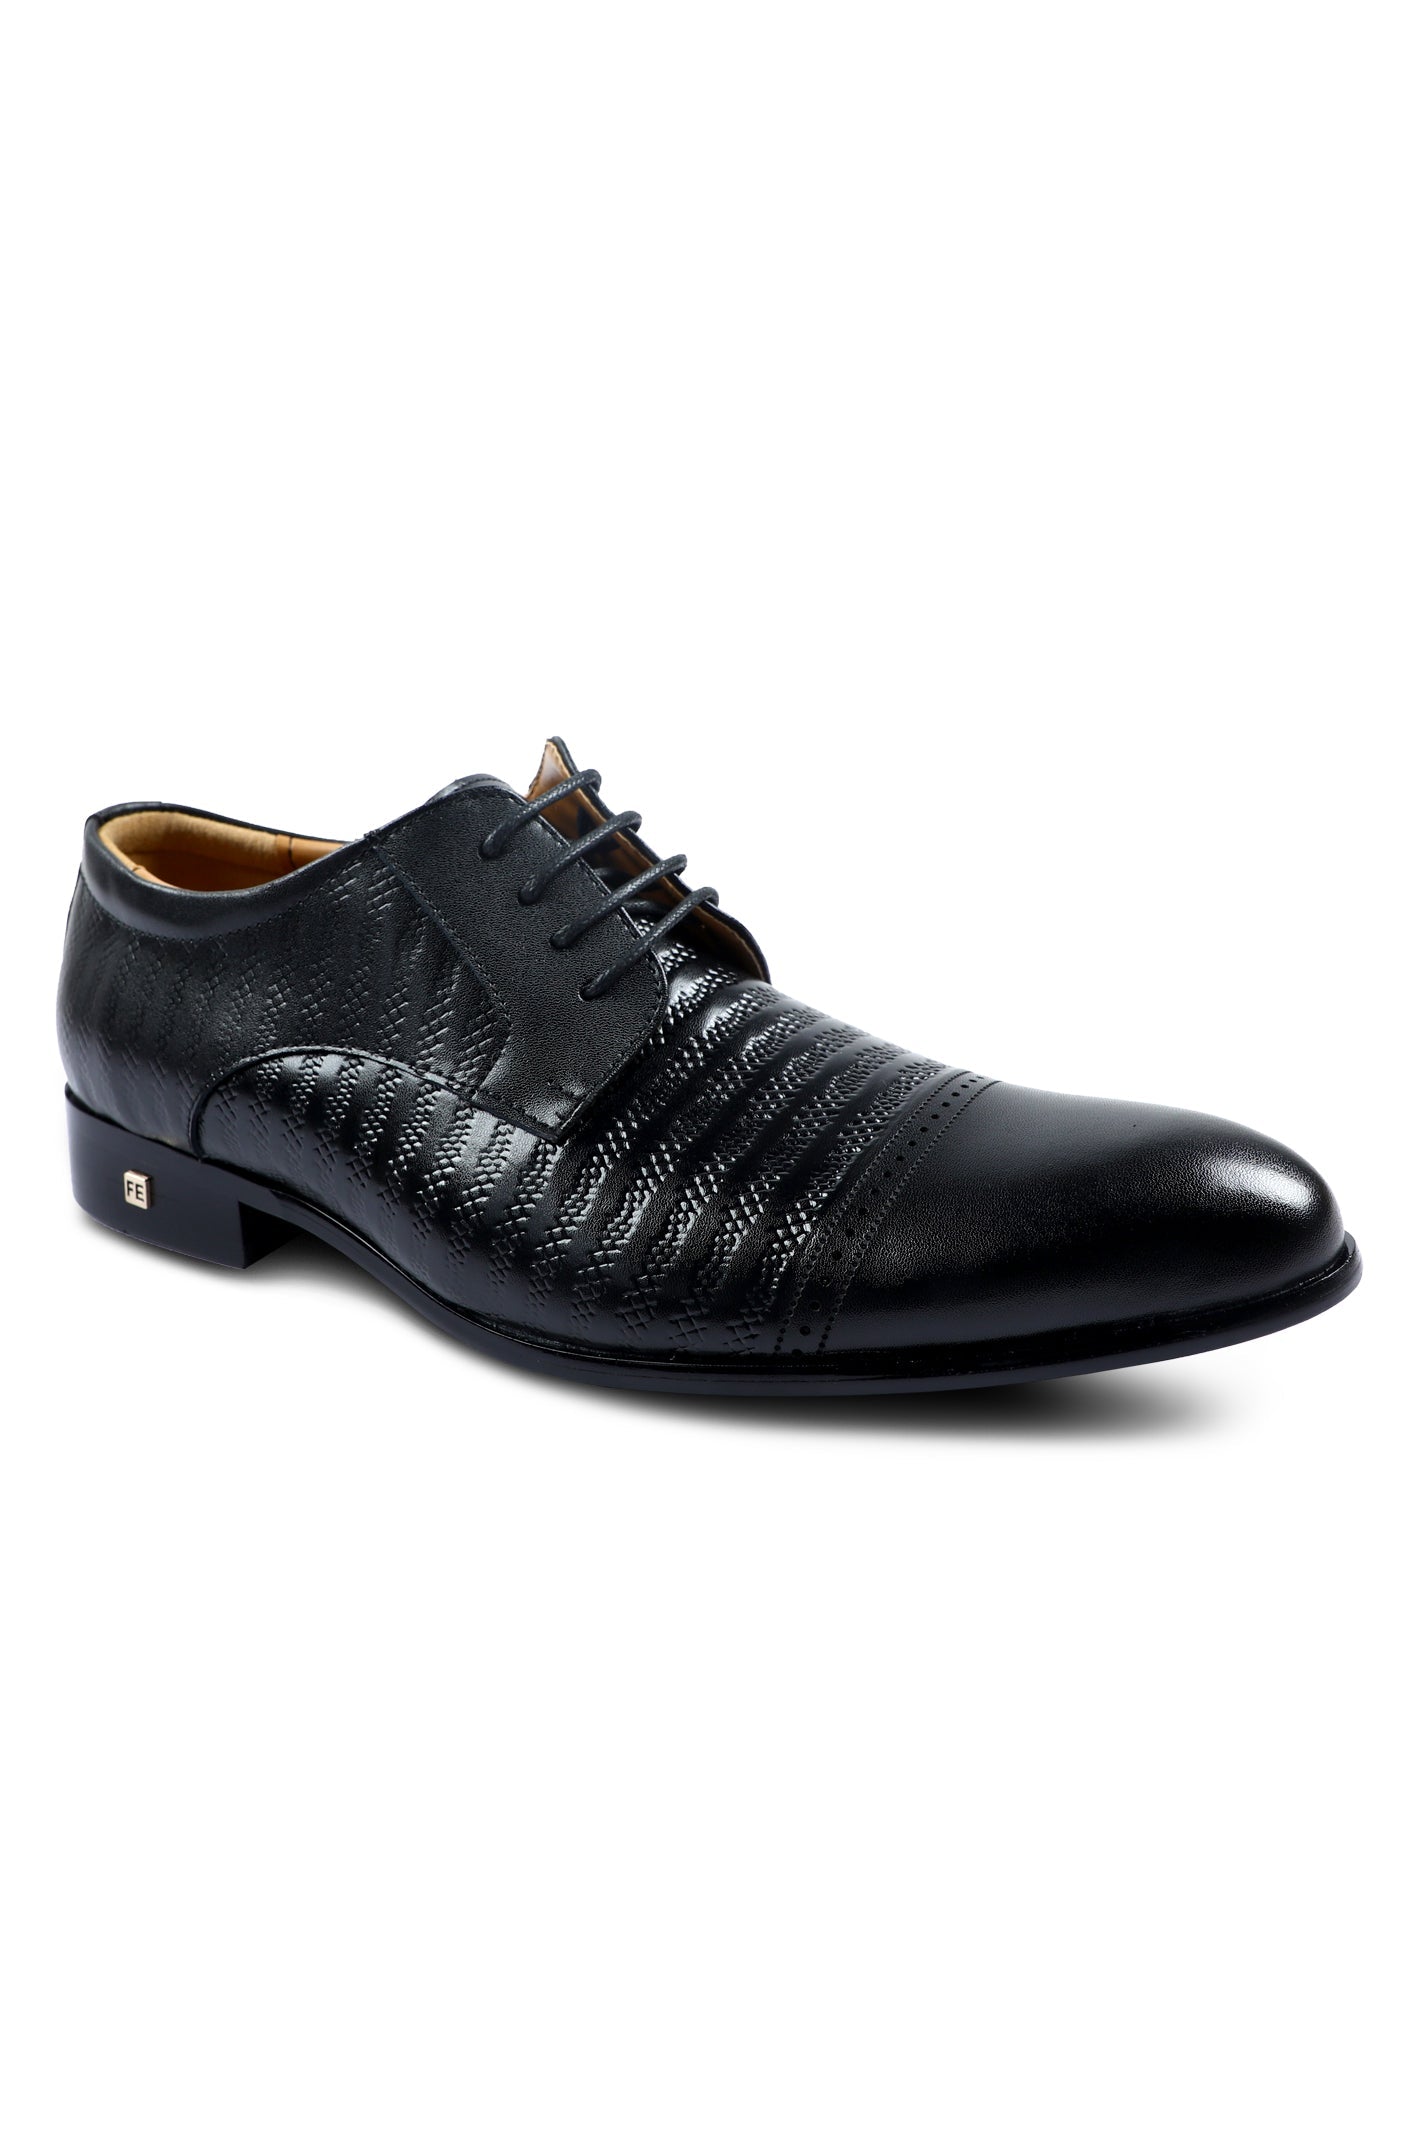 Formal Shoes For Men in Black SKU: SMF-0175-BLACK - Diners